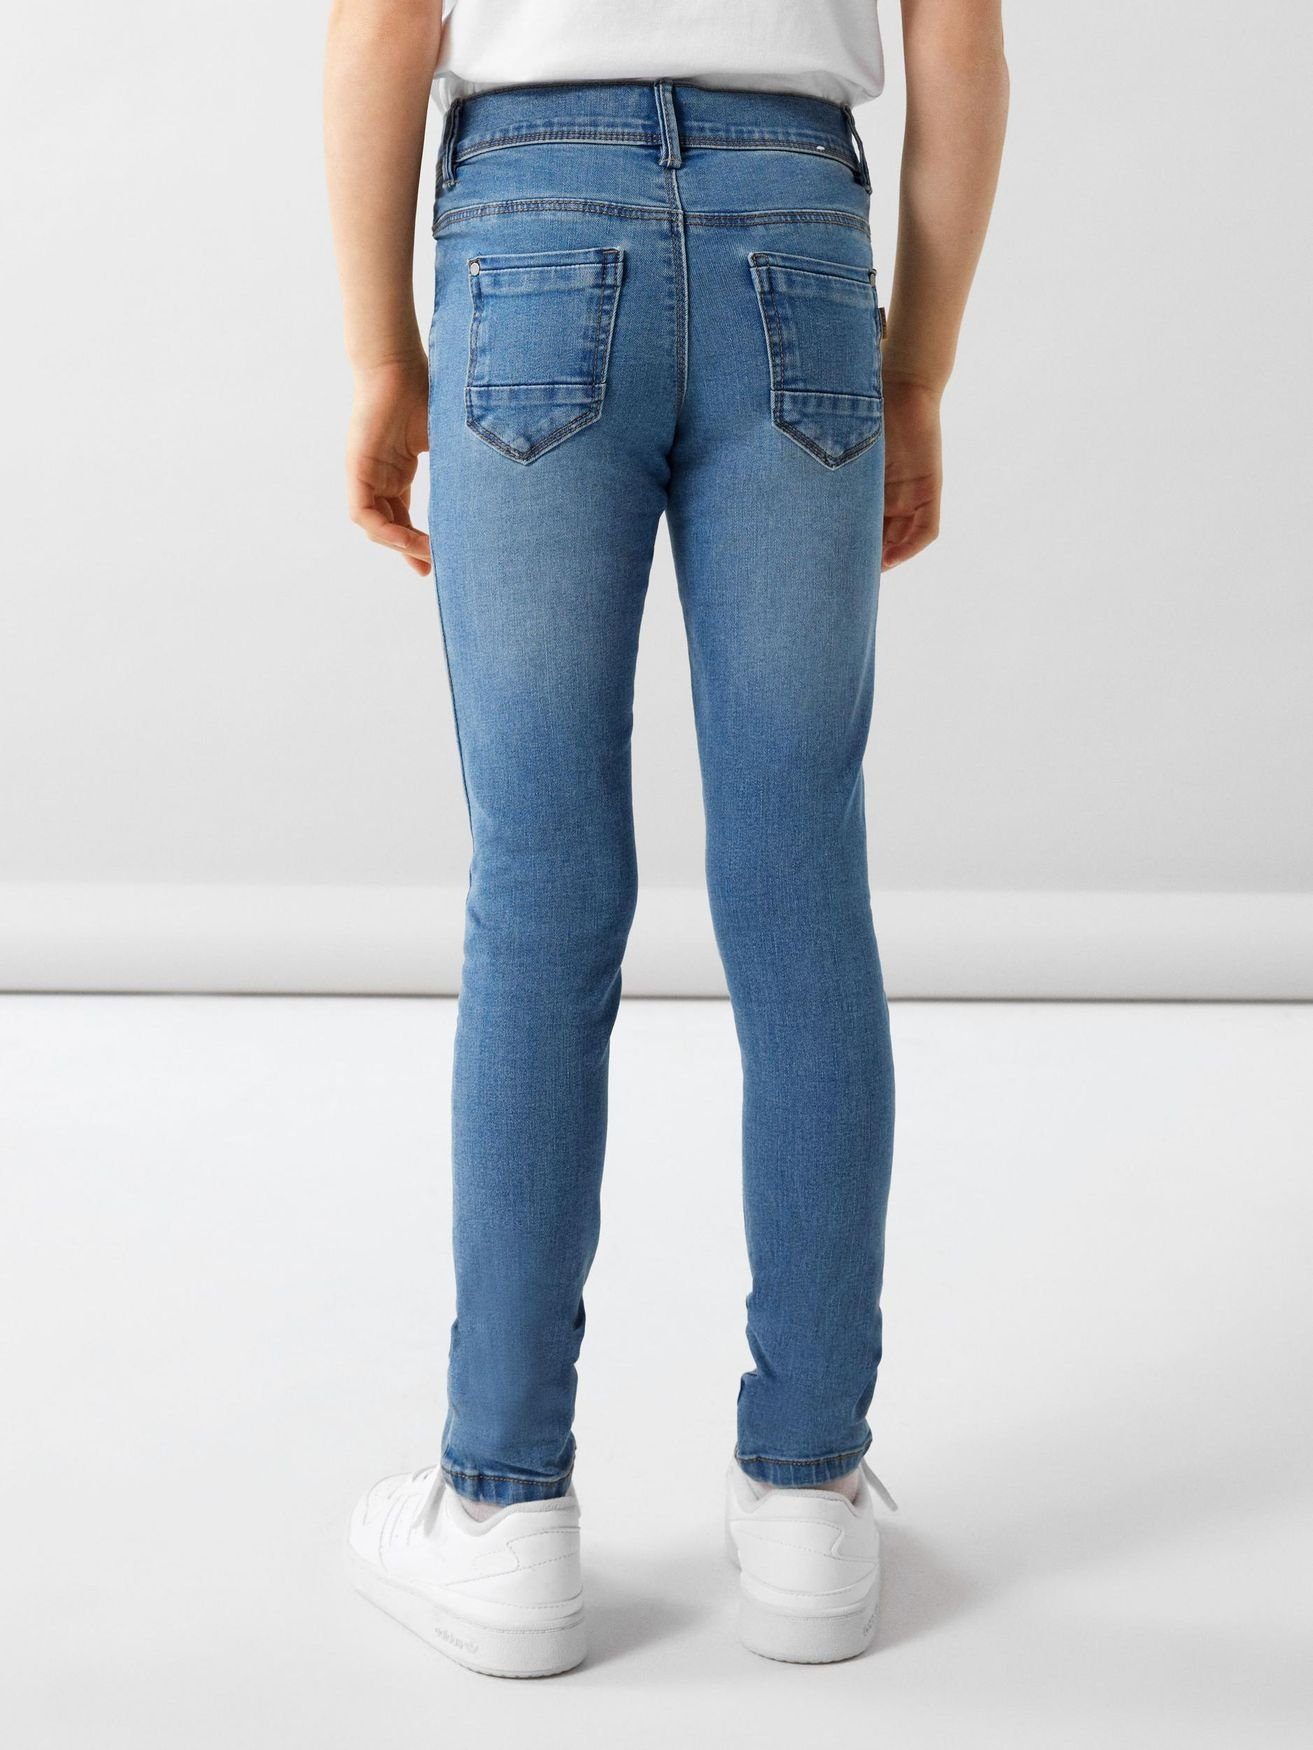 Name Hose Jeans Hellblau Denim Regular-fit-Jeans Skinny in NKFPOLLY It 5546